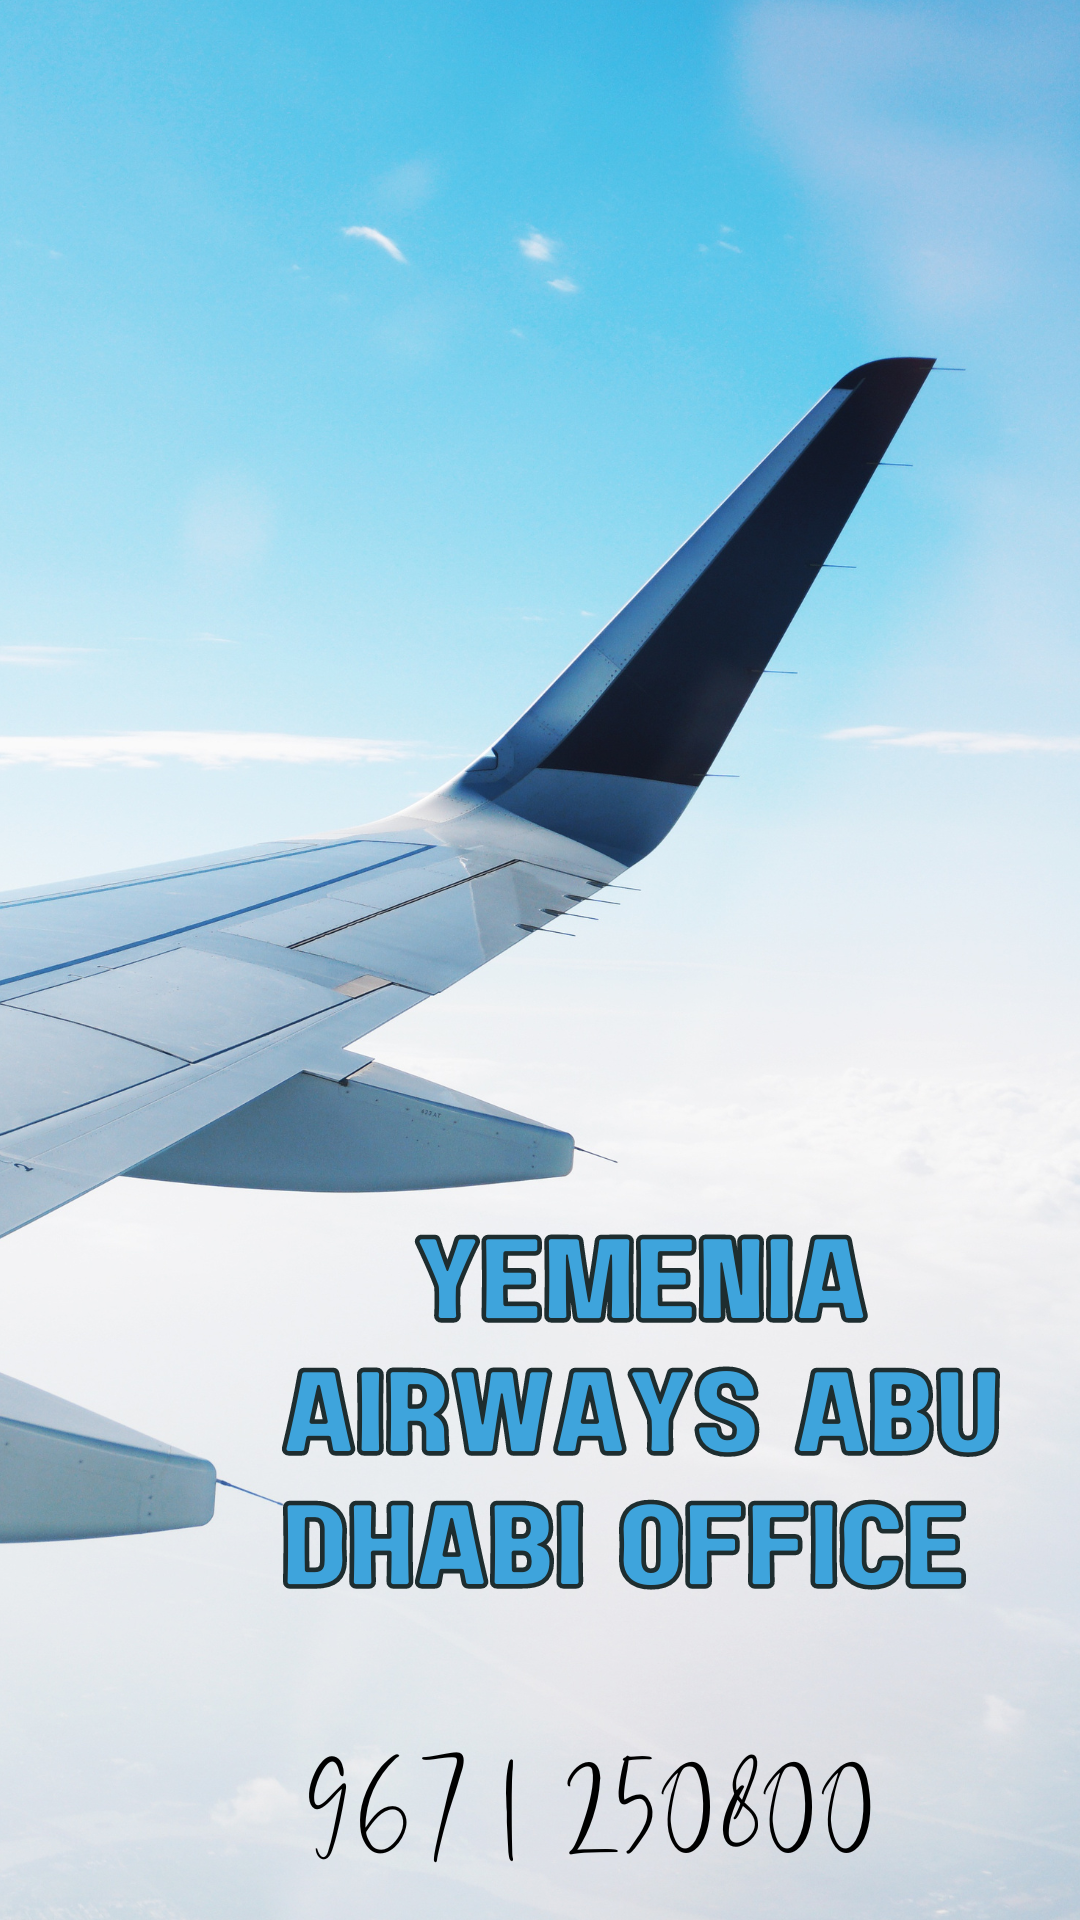 Yemenia Airways Abu Dhabi Office ( 967 1 250800)